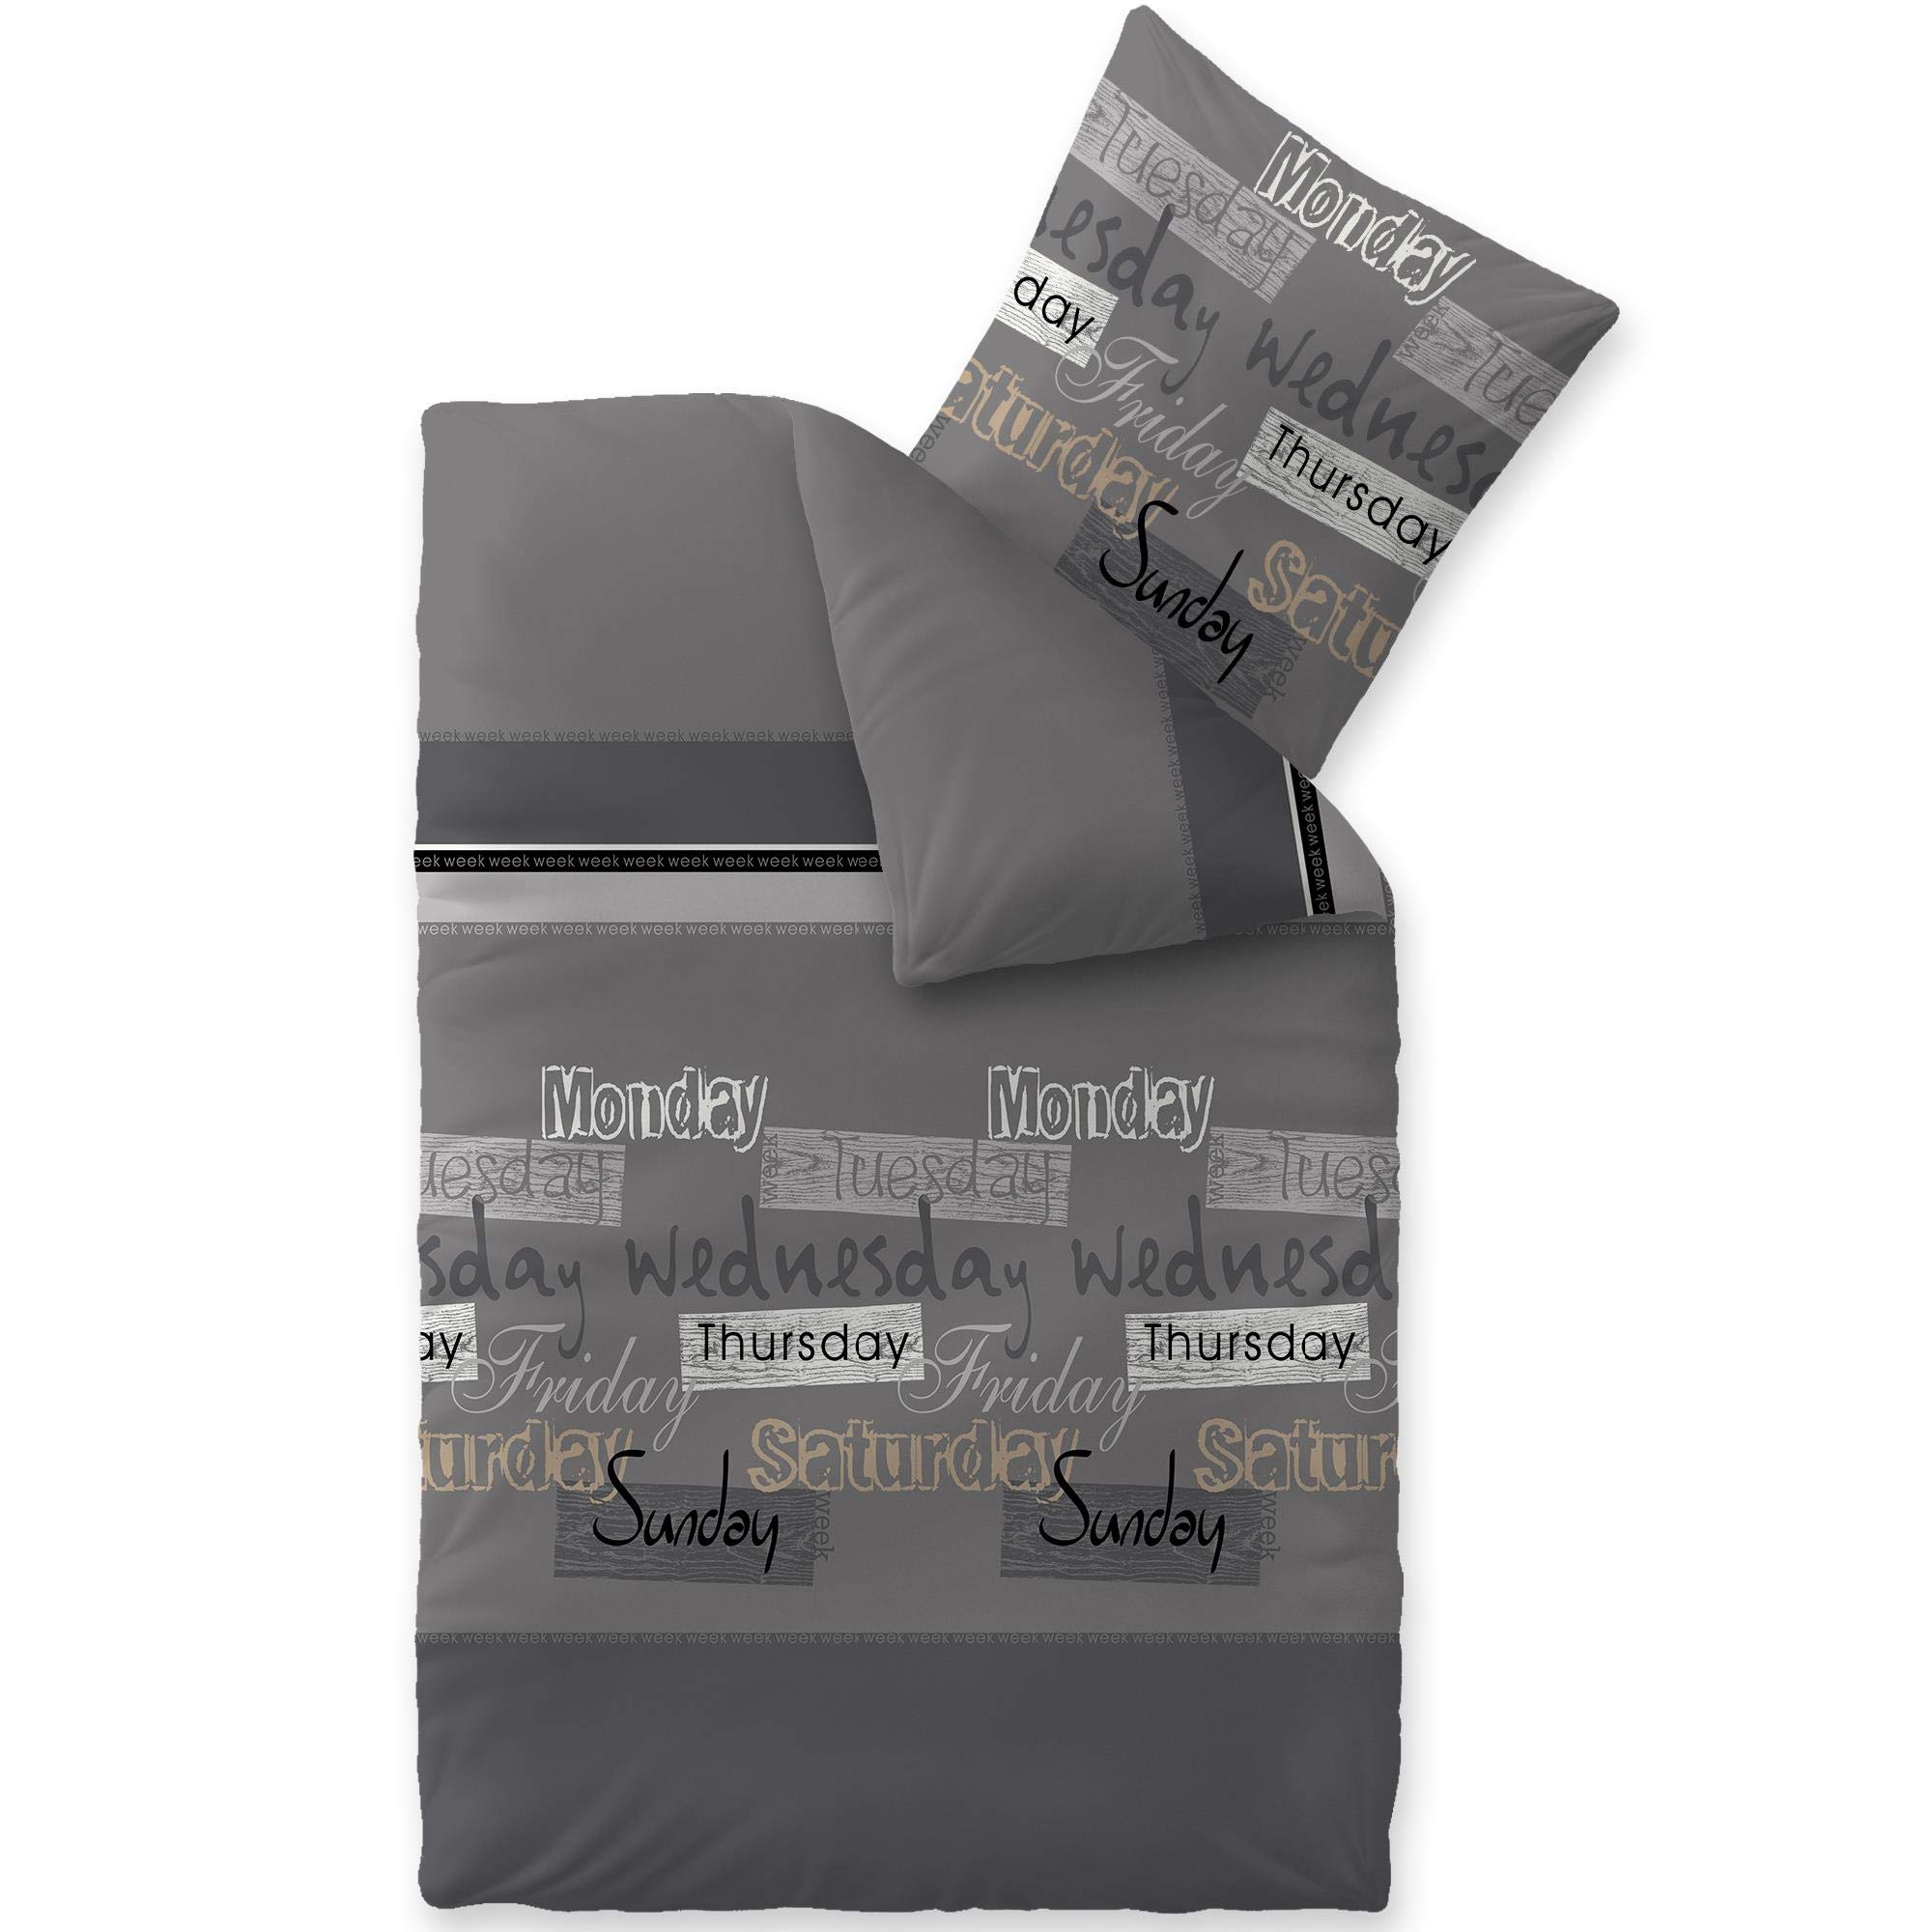 CelinaTex Touchme Biber Bettwäsche 135 x 200 cm 2teilig Baumwolle Bettbezug Carla grau anthrazit schwarz